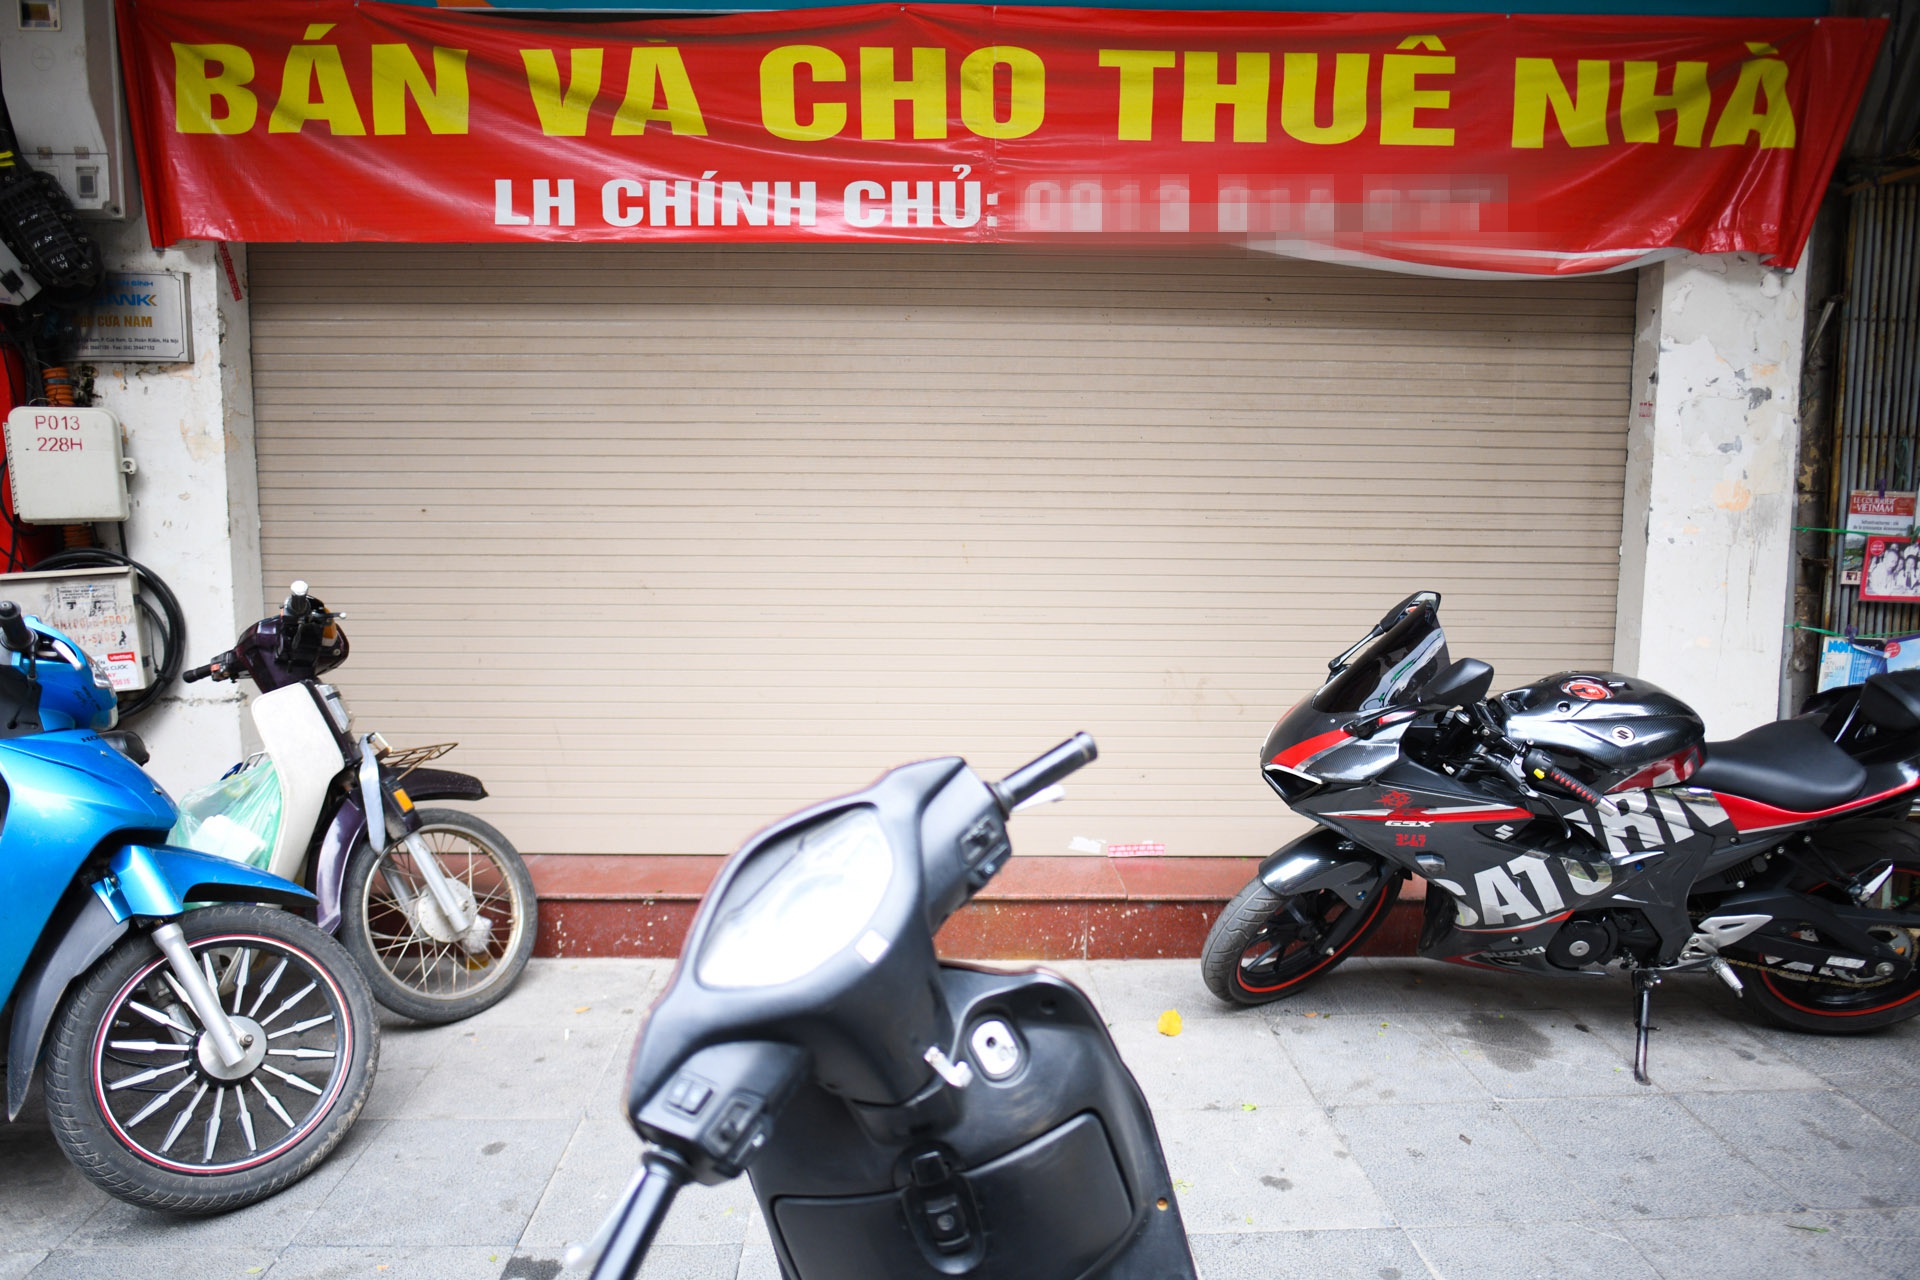 Hàng loạt nhà phố cổ Hà Nội treo biển cho thuê, bán nhà - Ảnh 5.